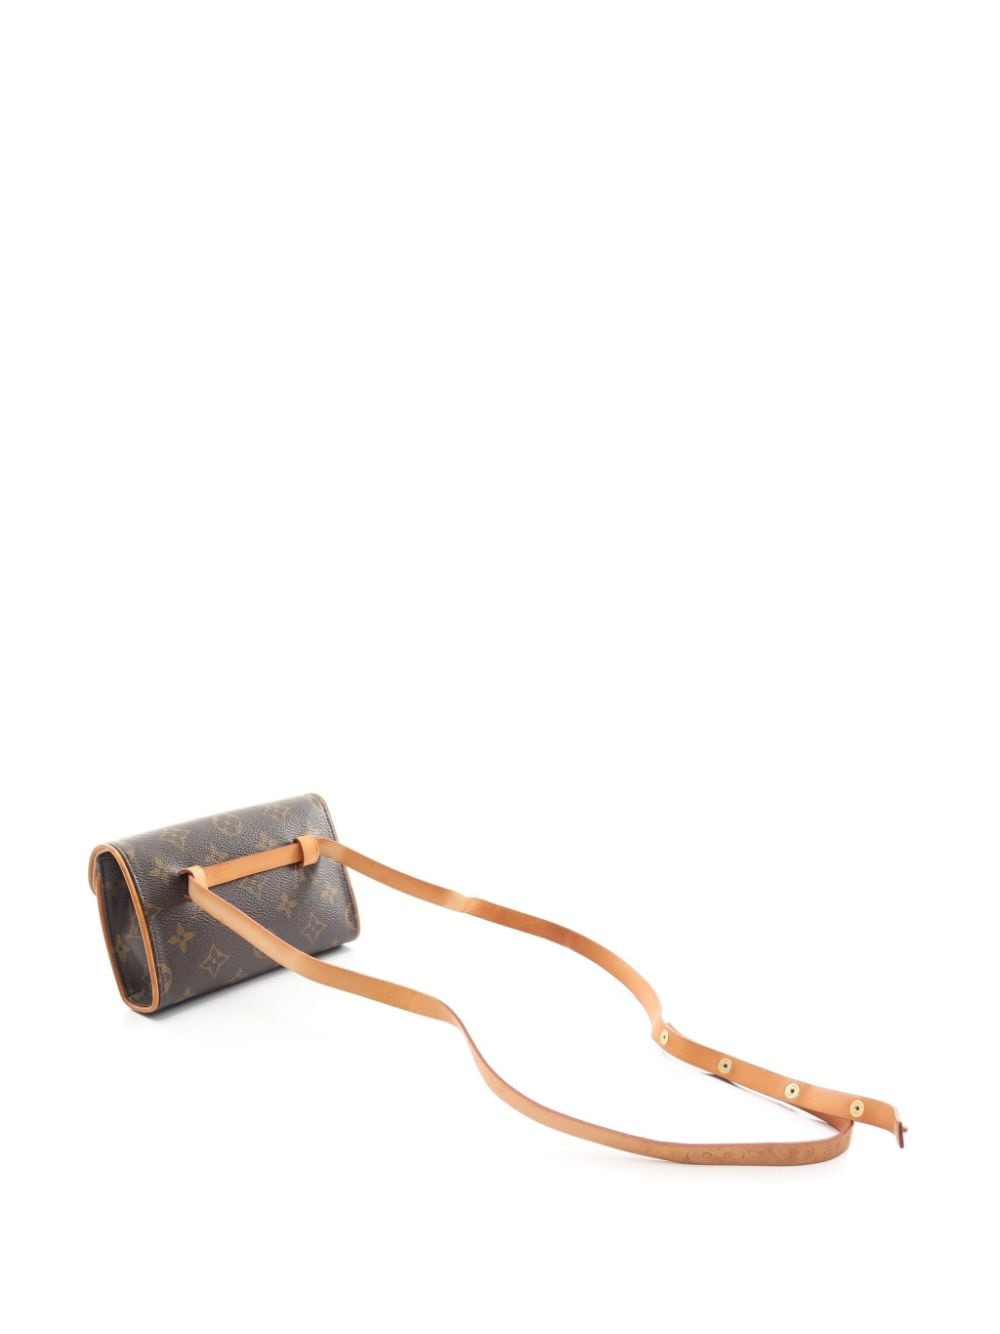 My Best Friend's Closet - ✨New Arrival✨ Louis Vuitton Pochette Florentine  Belt Bag In excellent condition $1095 • • #louisvuittonbelt #louisvuitton  #monogram #consignmentbag #louisvuittonfannypack #fannybag  #designerconsignment